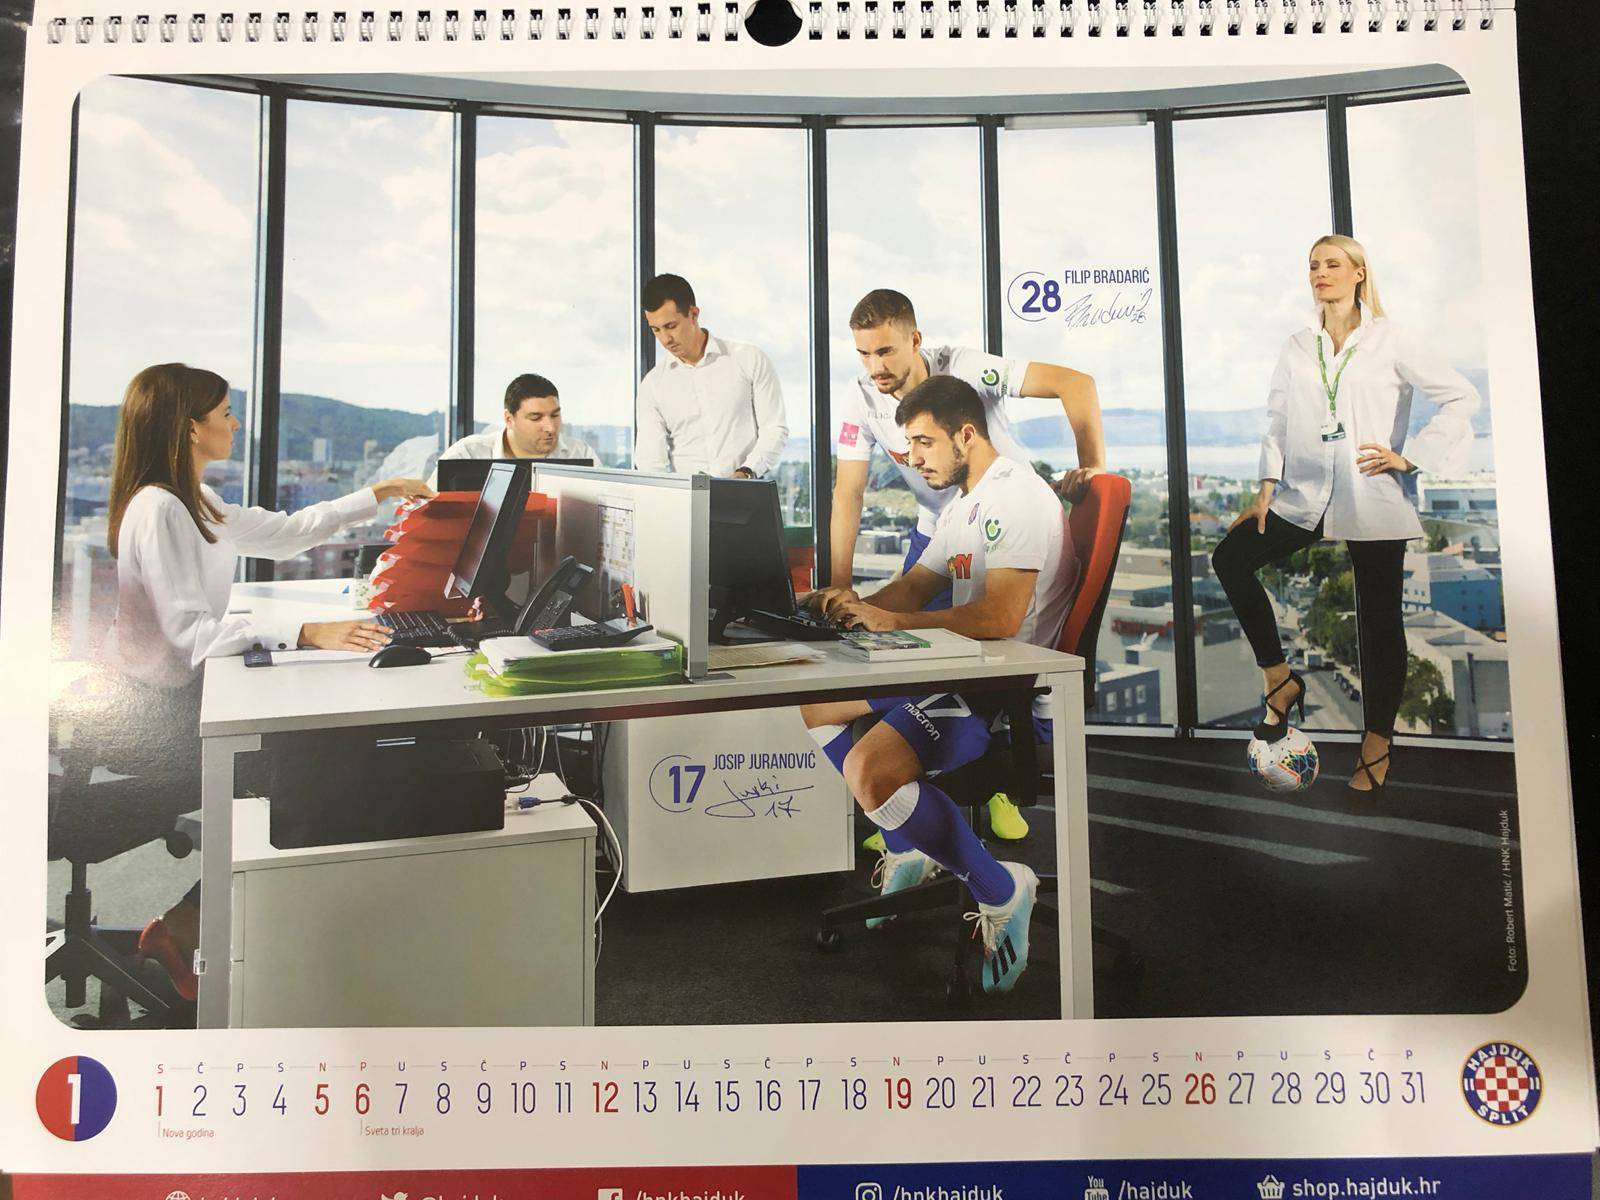 Hajduk predstavio kalendar: Igrači kao kirurzi na operaciji